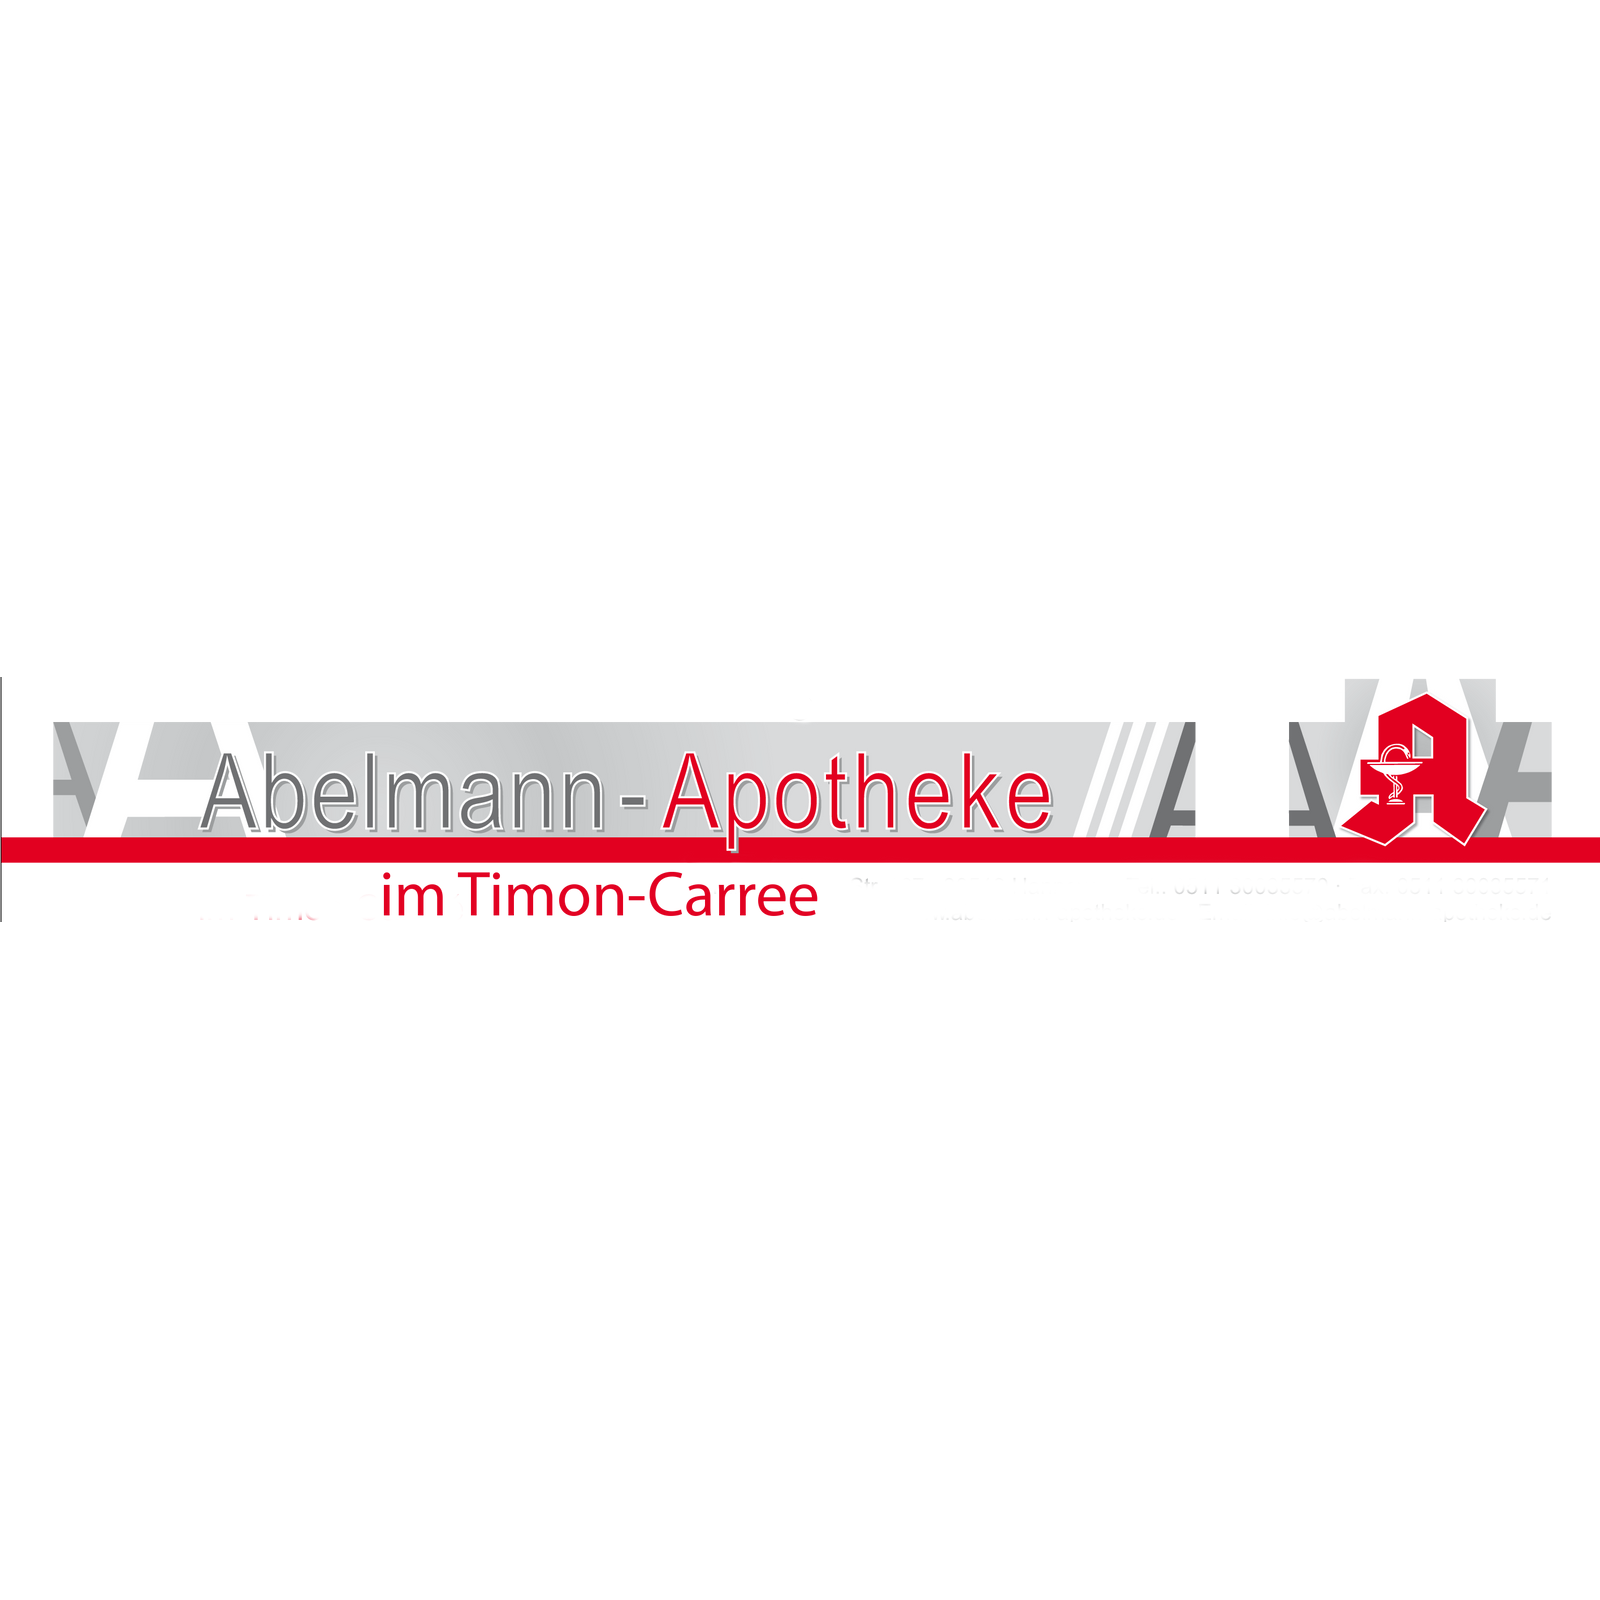 Logo Logo der Abelmann-Apotheke im Timon-Carrée